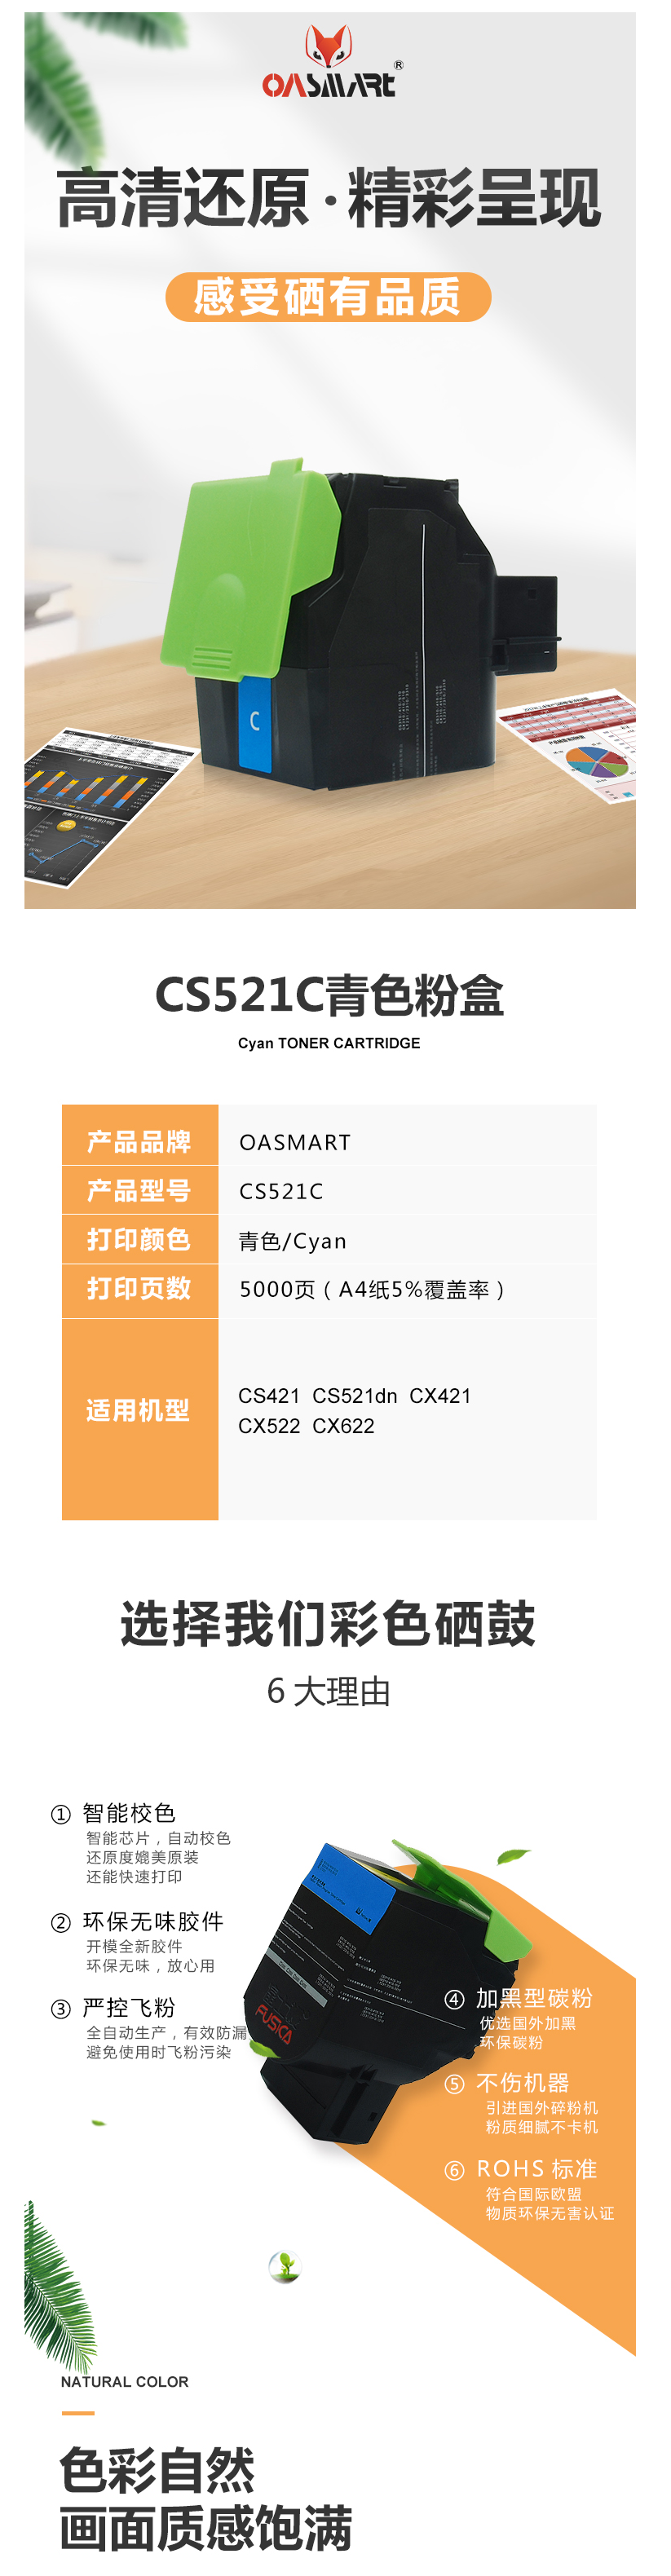 FireShot Capture 629 - 【OASMARTCS521C】OASMART（欧司特）CS521C 青色_ - https___item.jd.com_100020629790.html.png